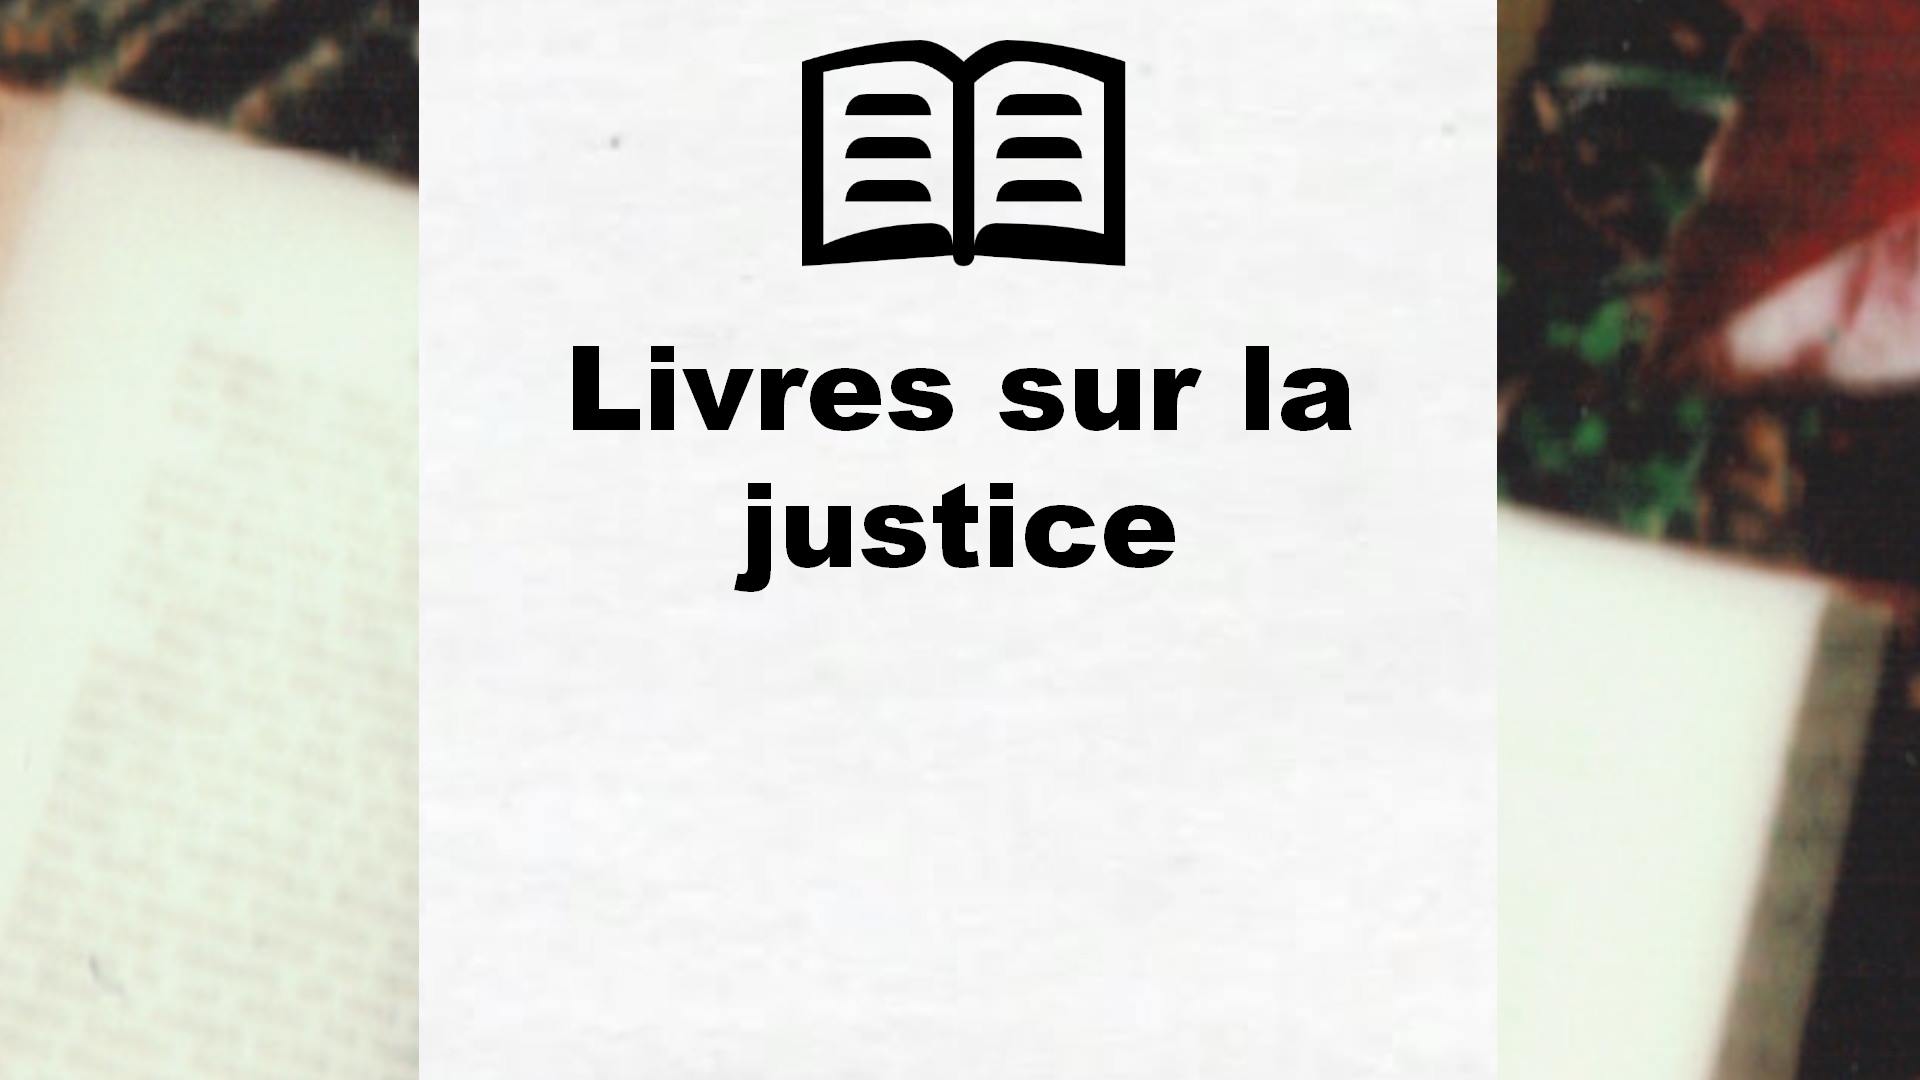 Livres sur la justice